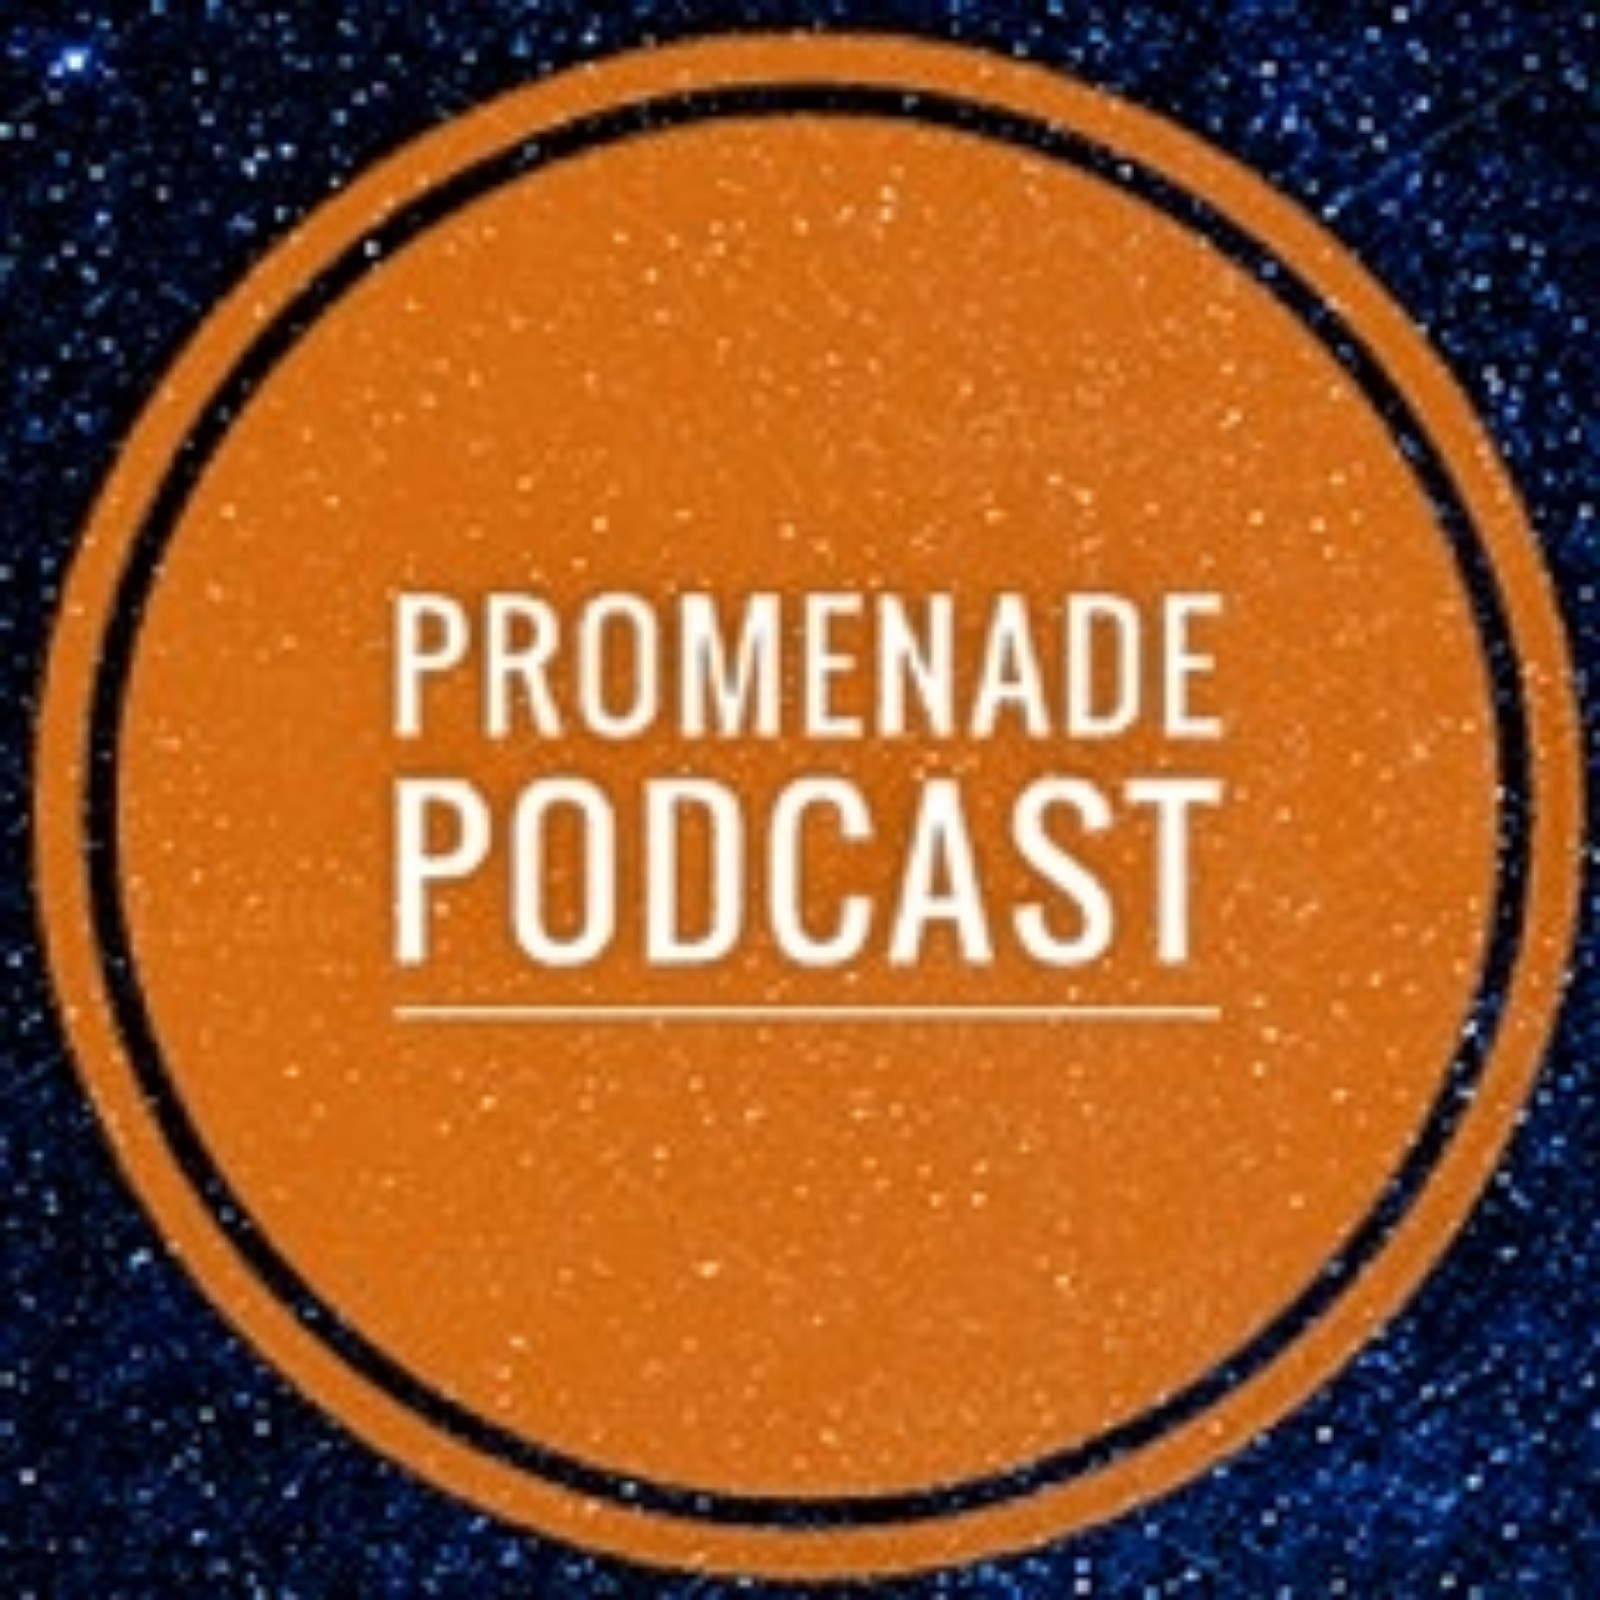 The Promenade Podcast